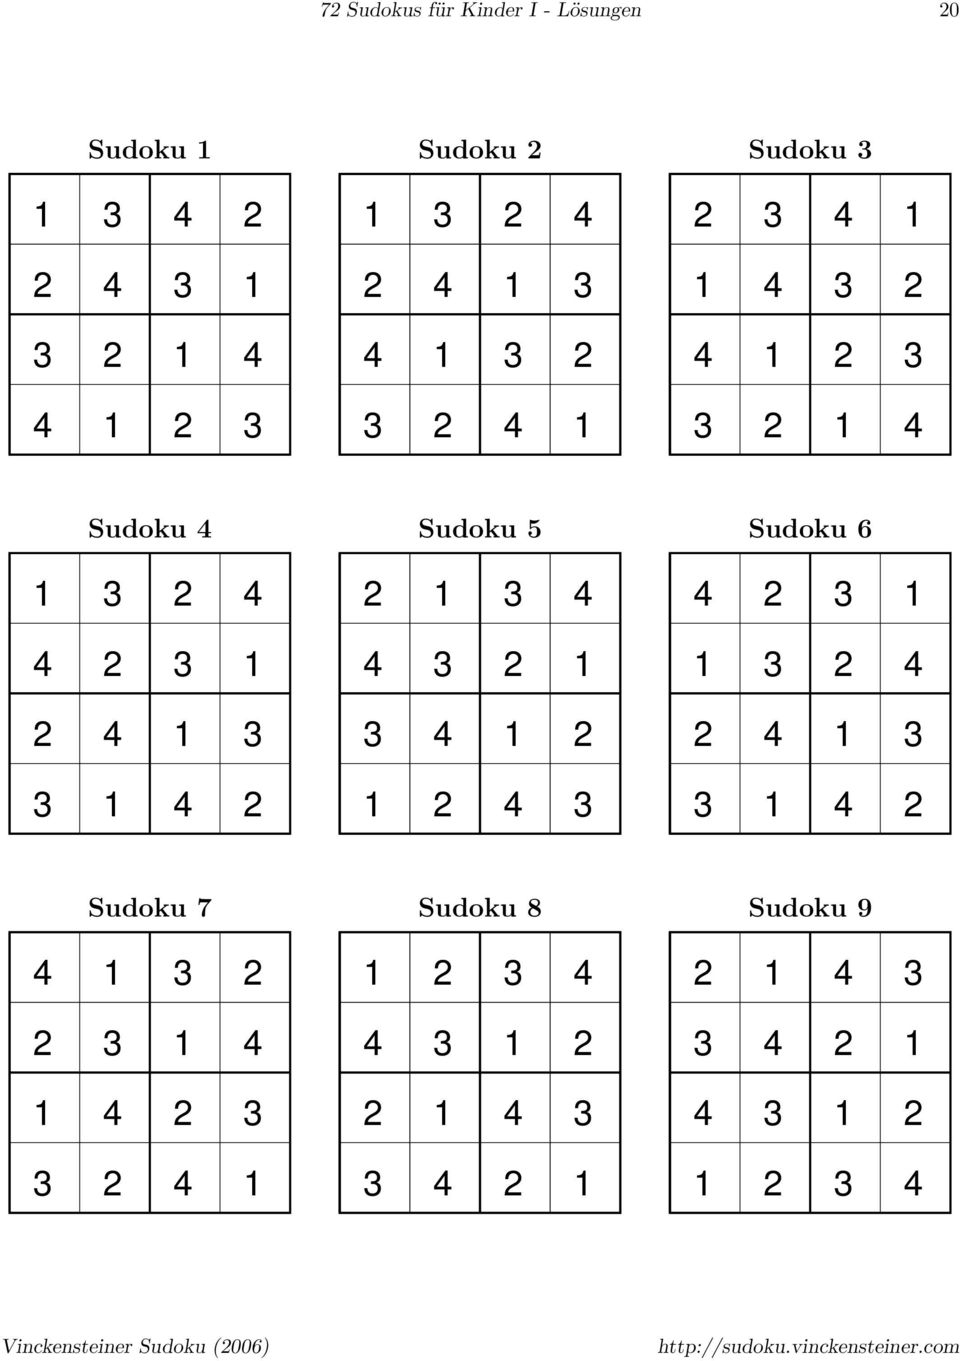 72 Sudokus Für Kinder Und Einsteiger - Band I - Pdf Free über Sudoku Für Schulkinder